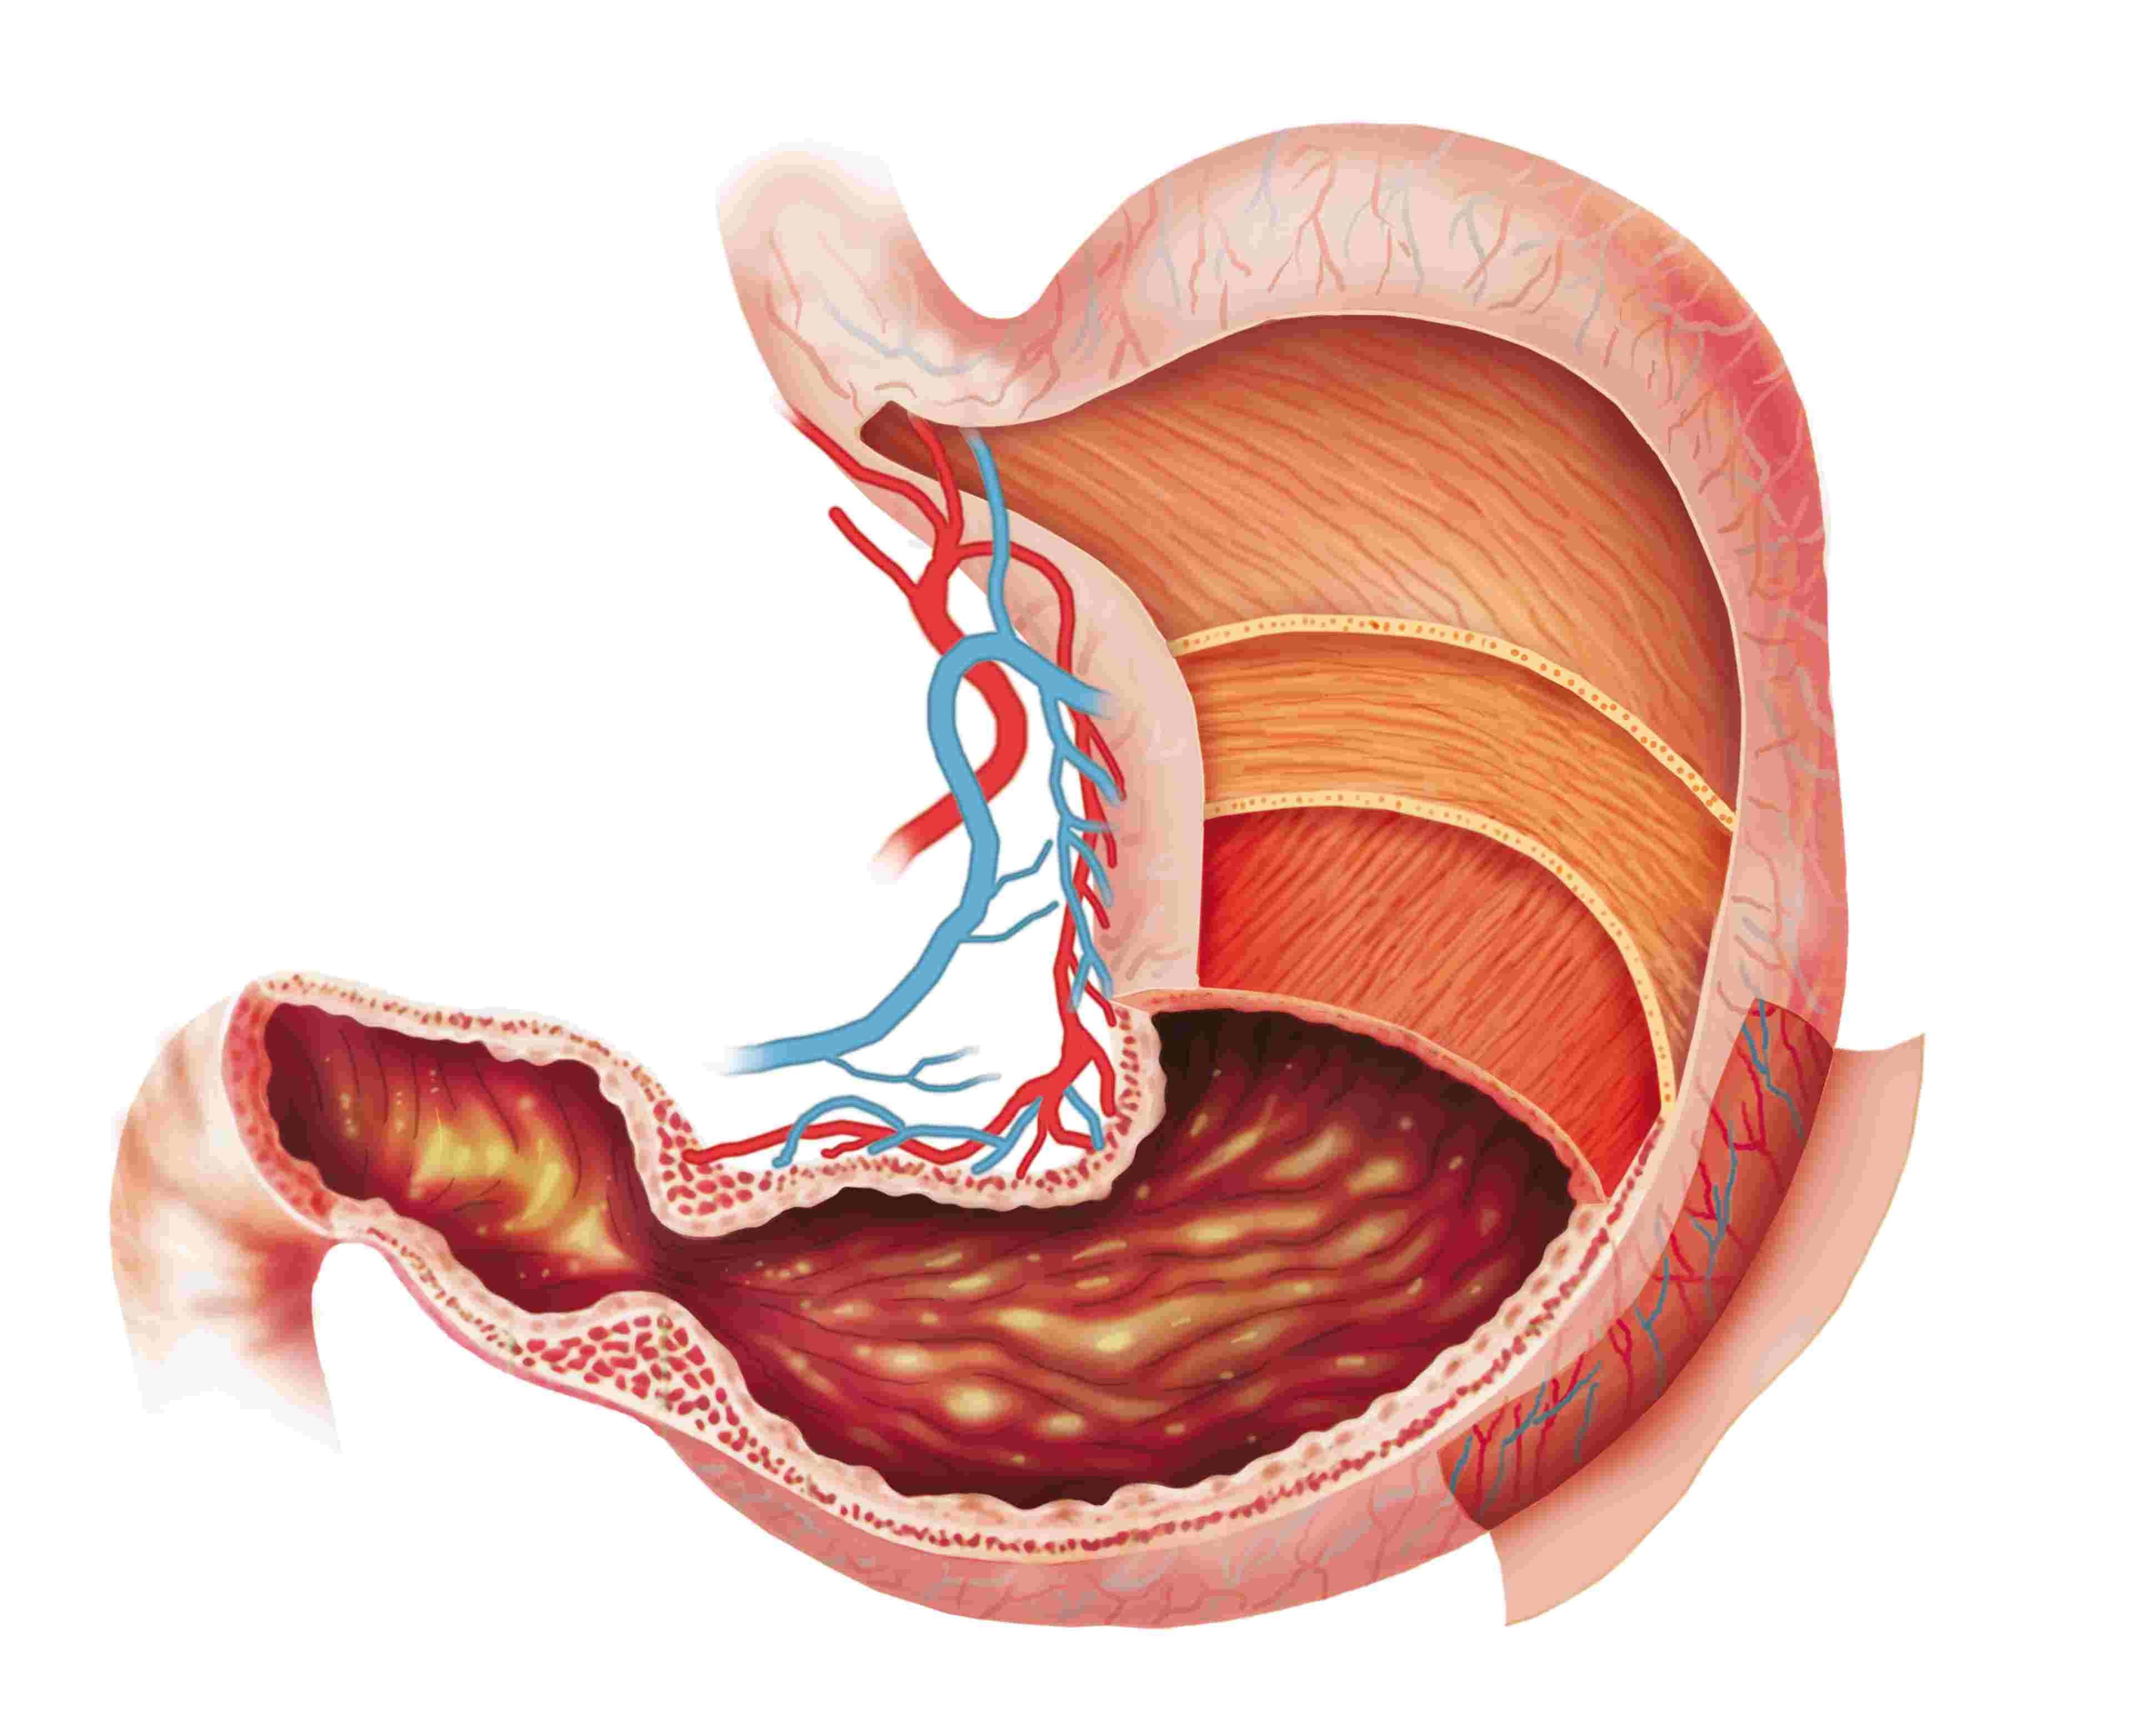 Анатомия органов брюшной полости